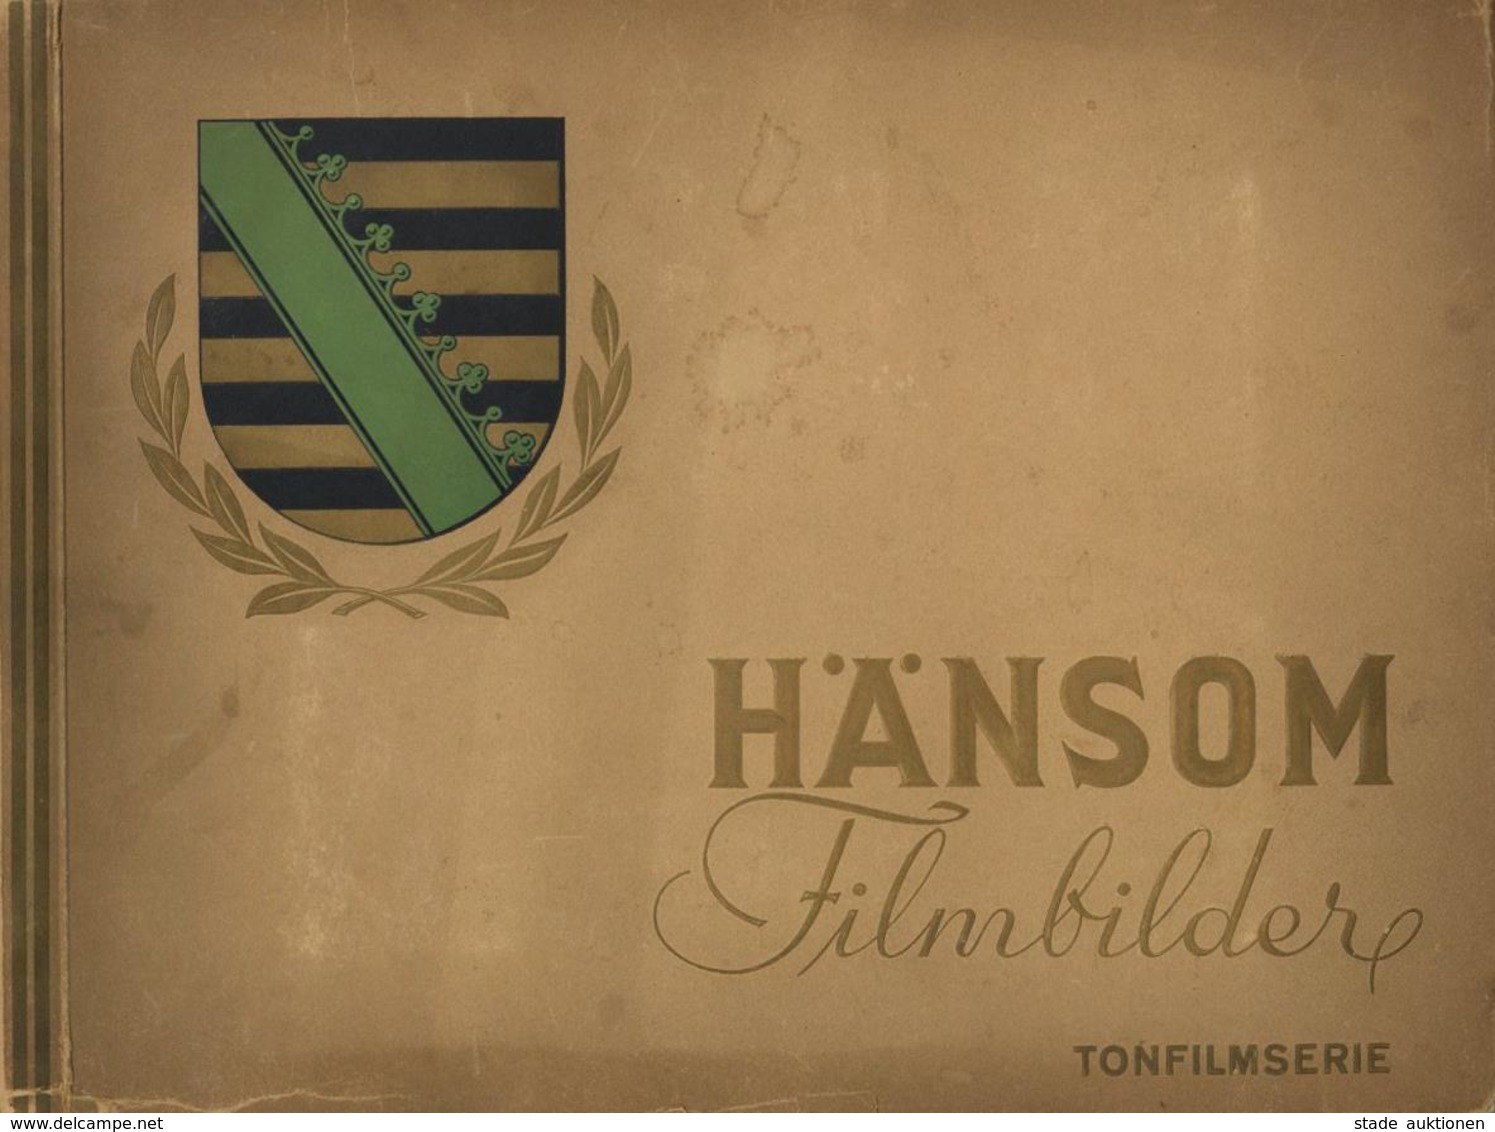 Sammelbild-Album Filmbilder Tonfilmserie Hänsom II (Einband Fleckig, Einrisse) - Weltkrieg 1939-45